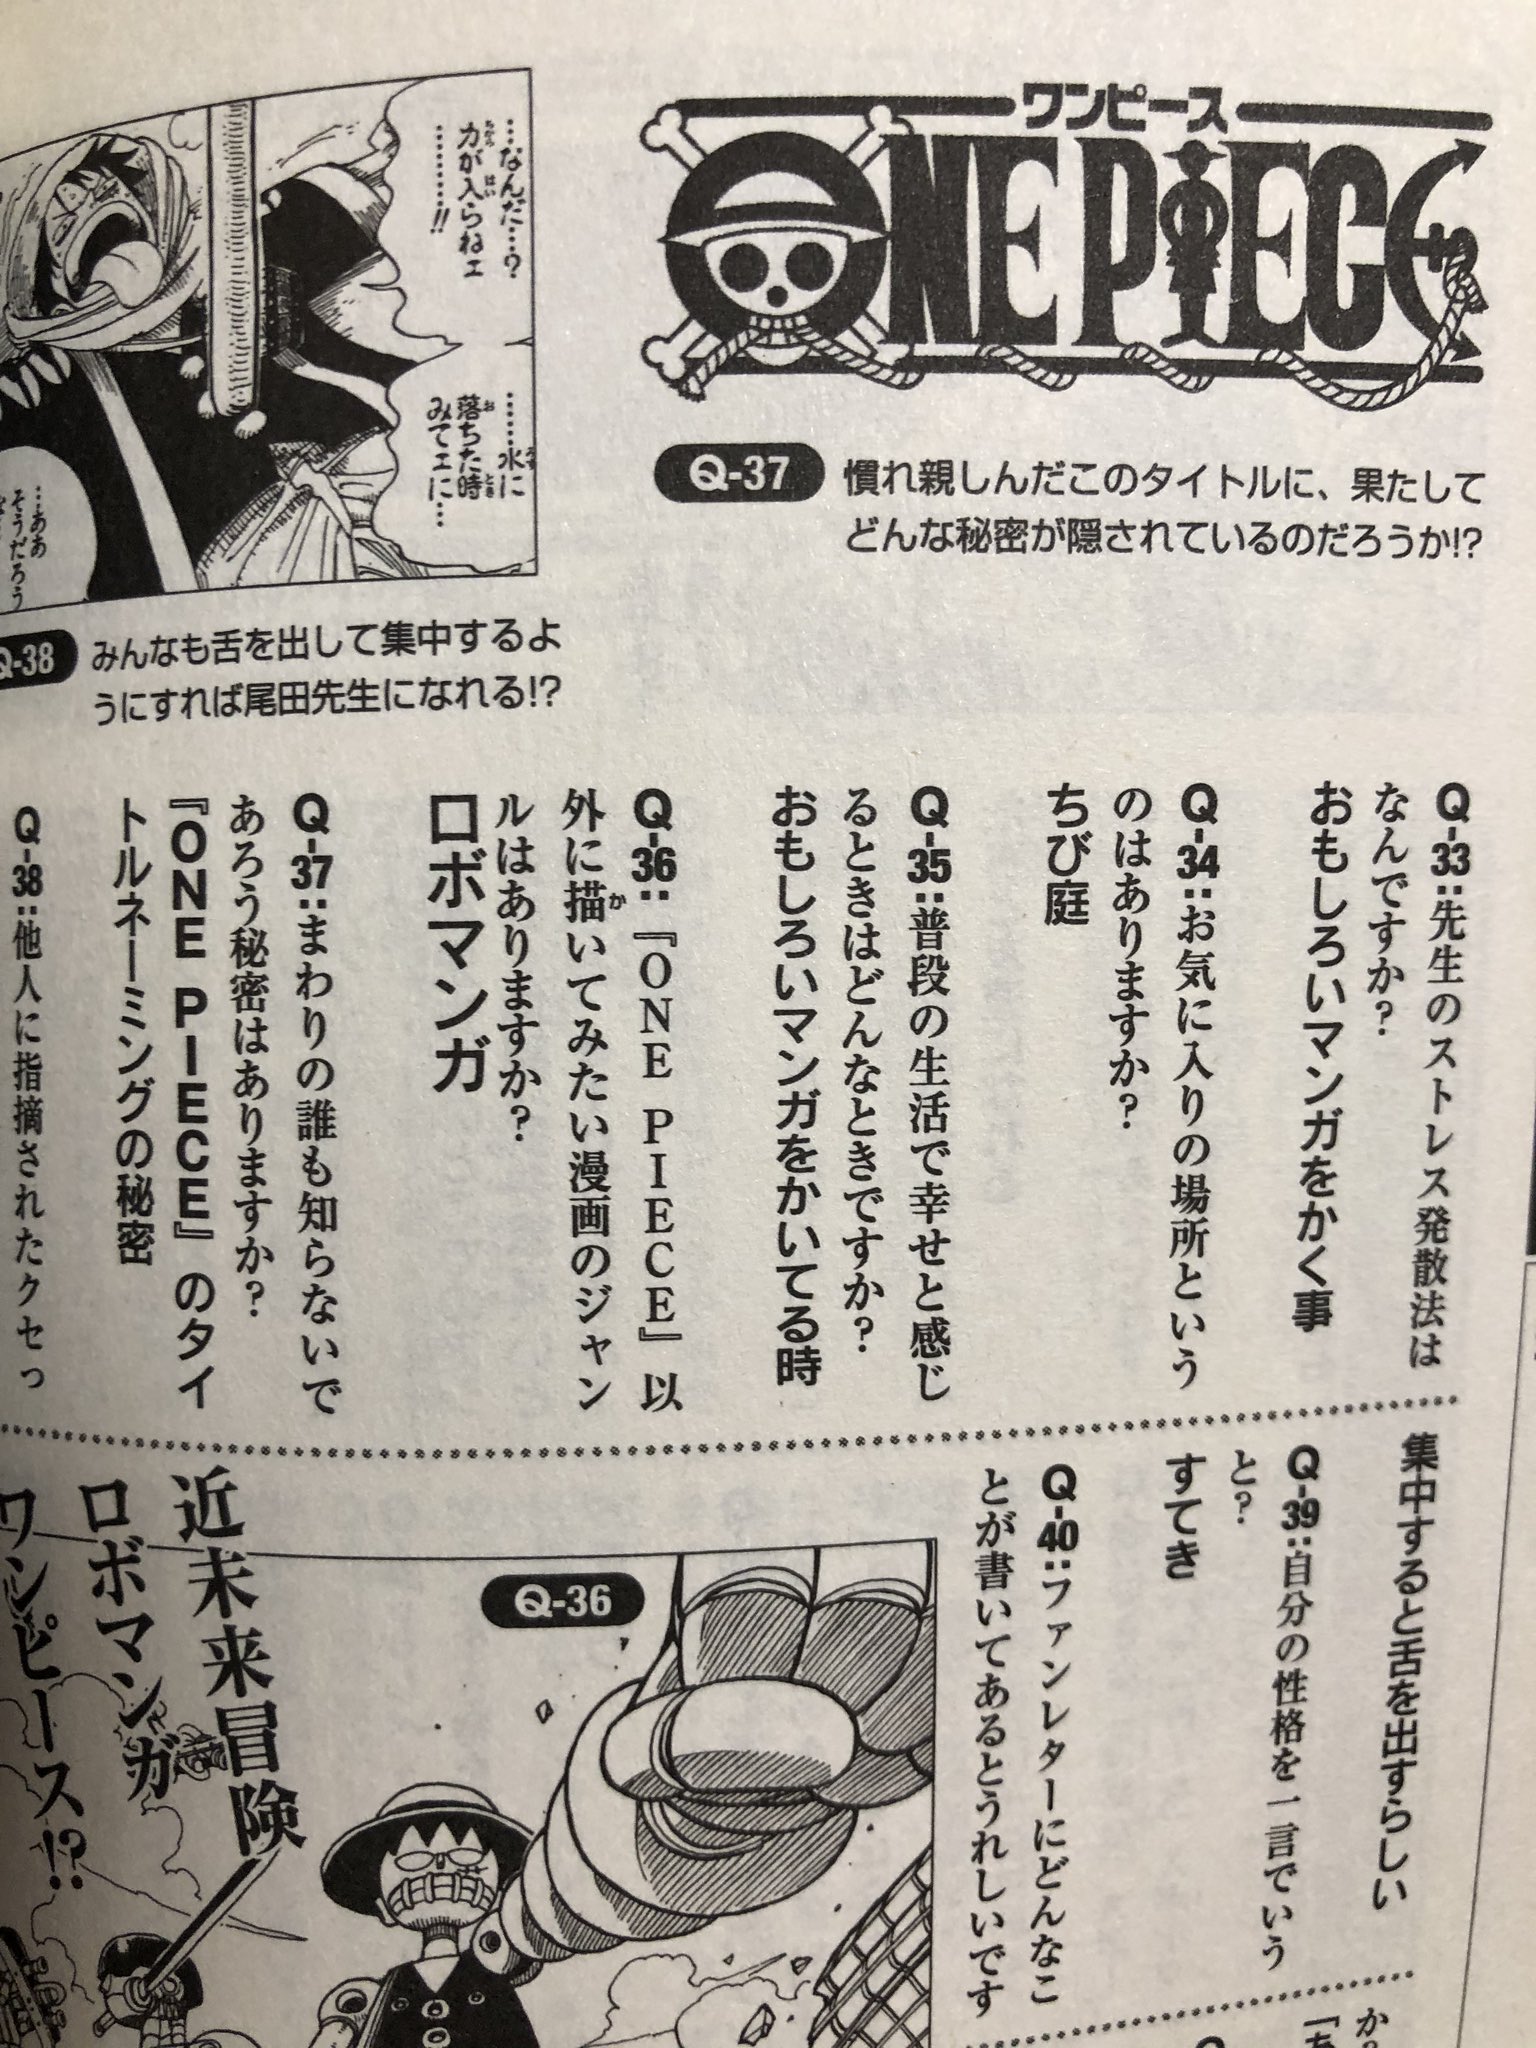 One Pieceが大好きな神木 スーパーカミキカンデ Remember Merry ずっと うみそら って読んでたからそっちが衝撃的でしたよ みそら さんかい これまで読み間違え失礼しました Twitter